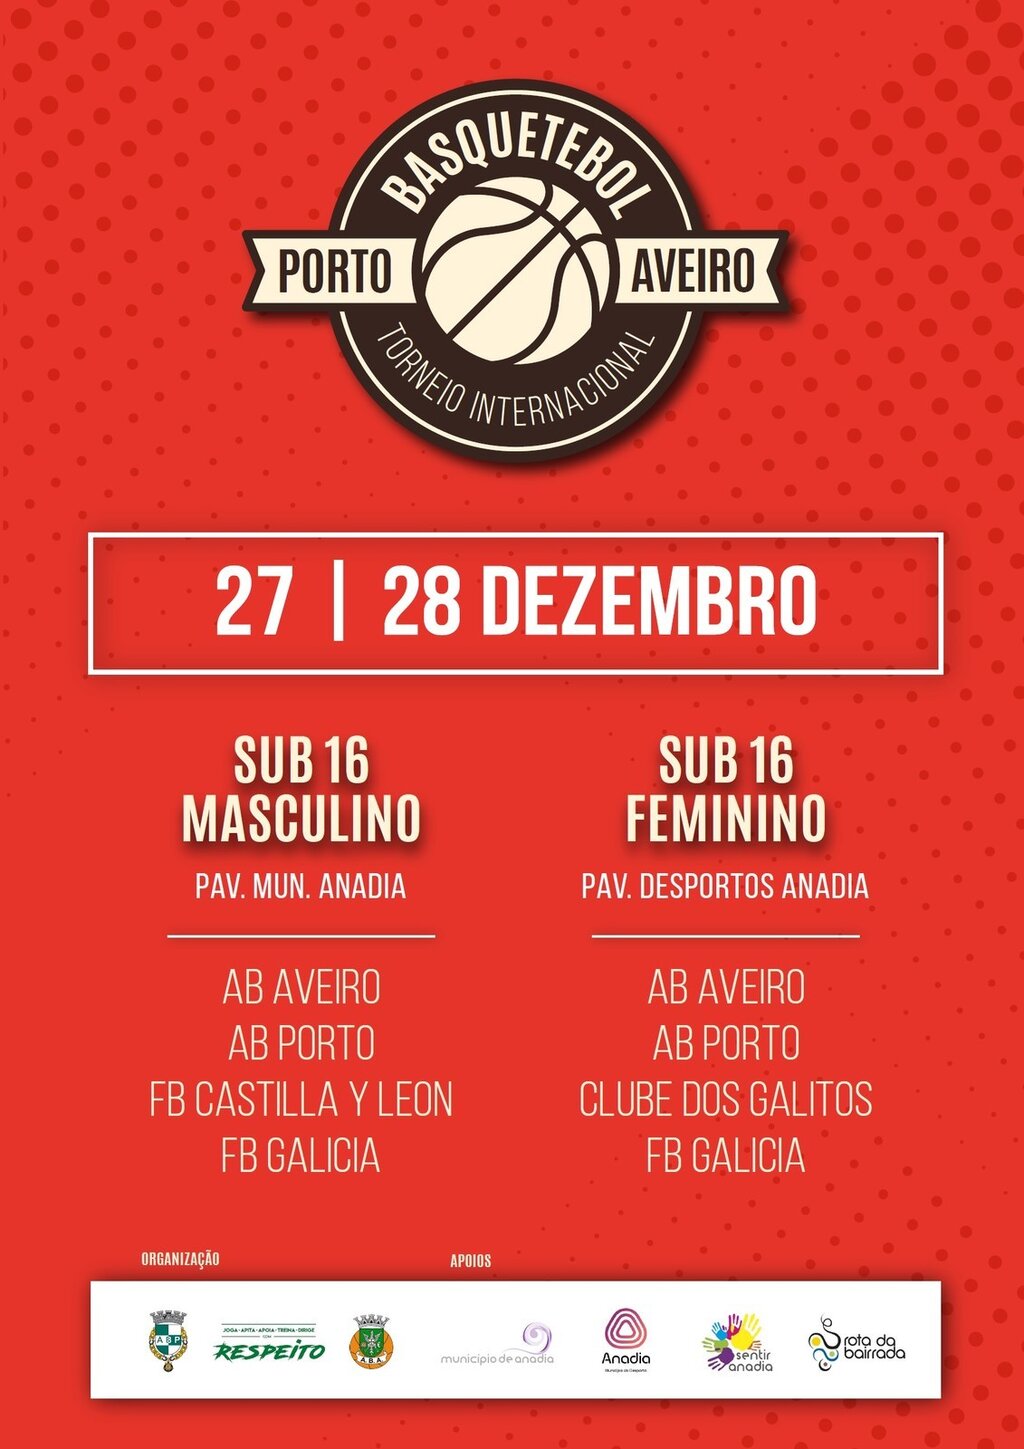 Torneio Internacional de Basquetebol Porto Aveiro